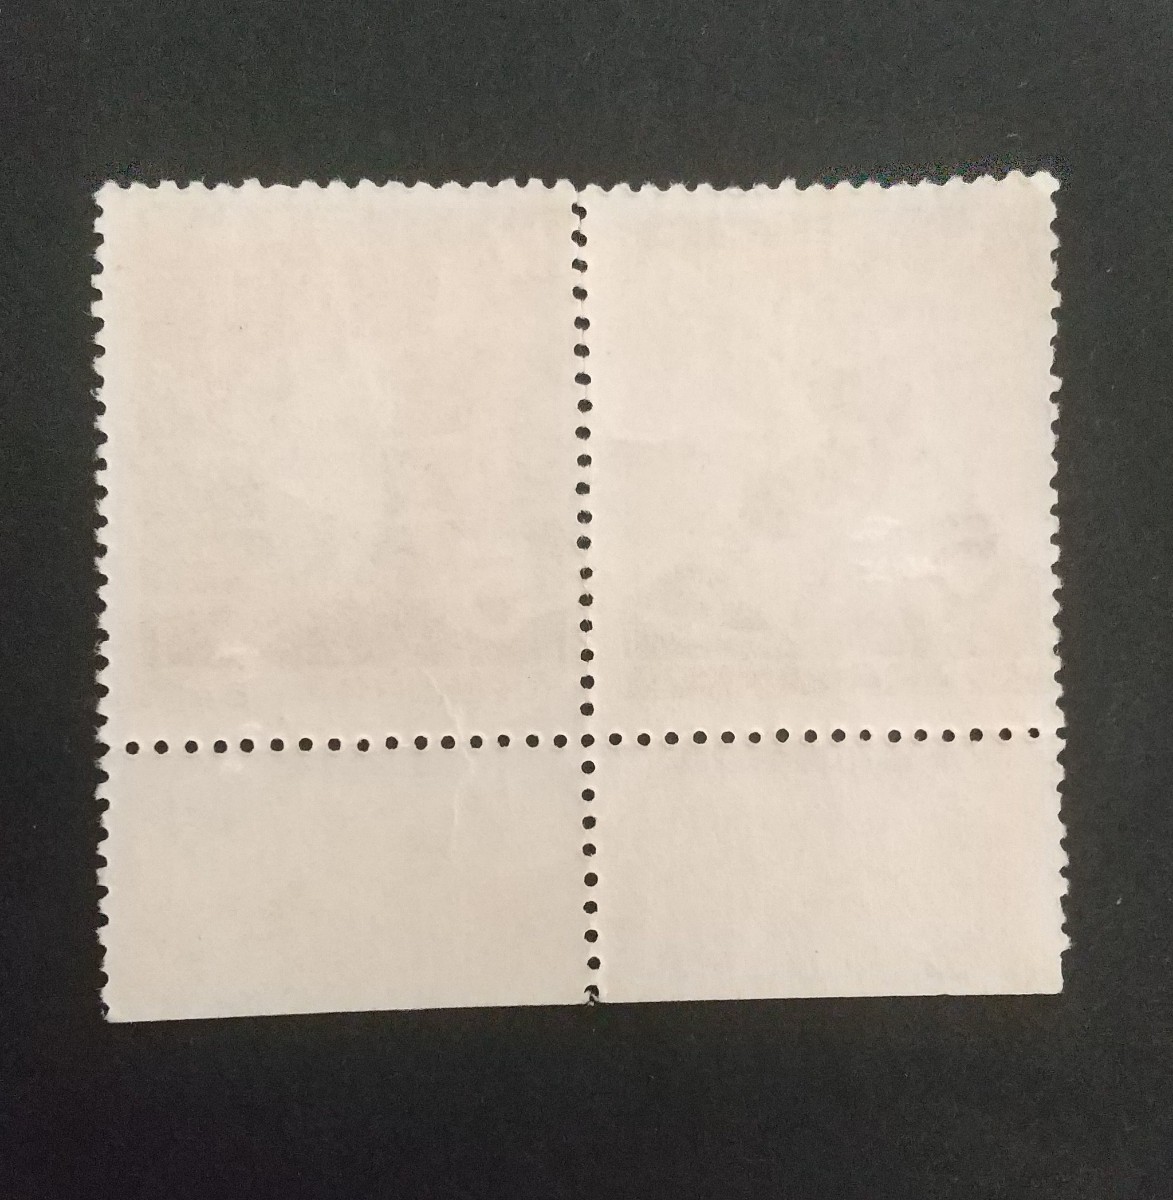 記念切手 第12回国民体育大会記念 1957 2種連 大蔵省銘板付き 未使用品 (ST-10)の画像2